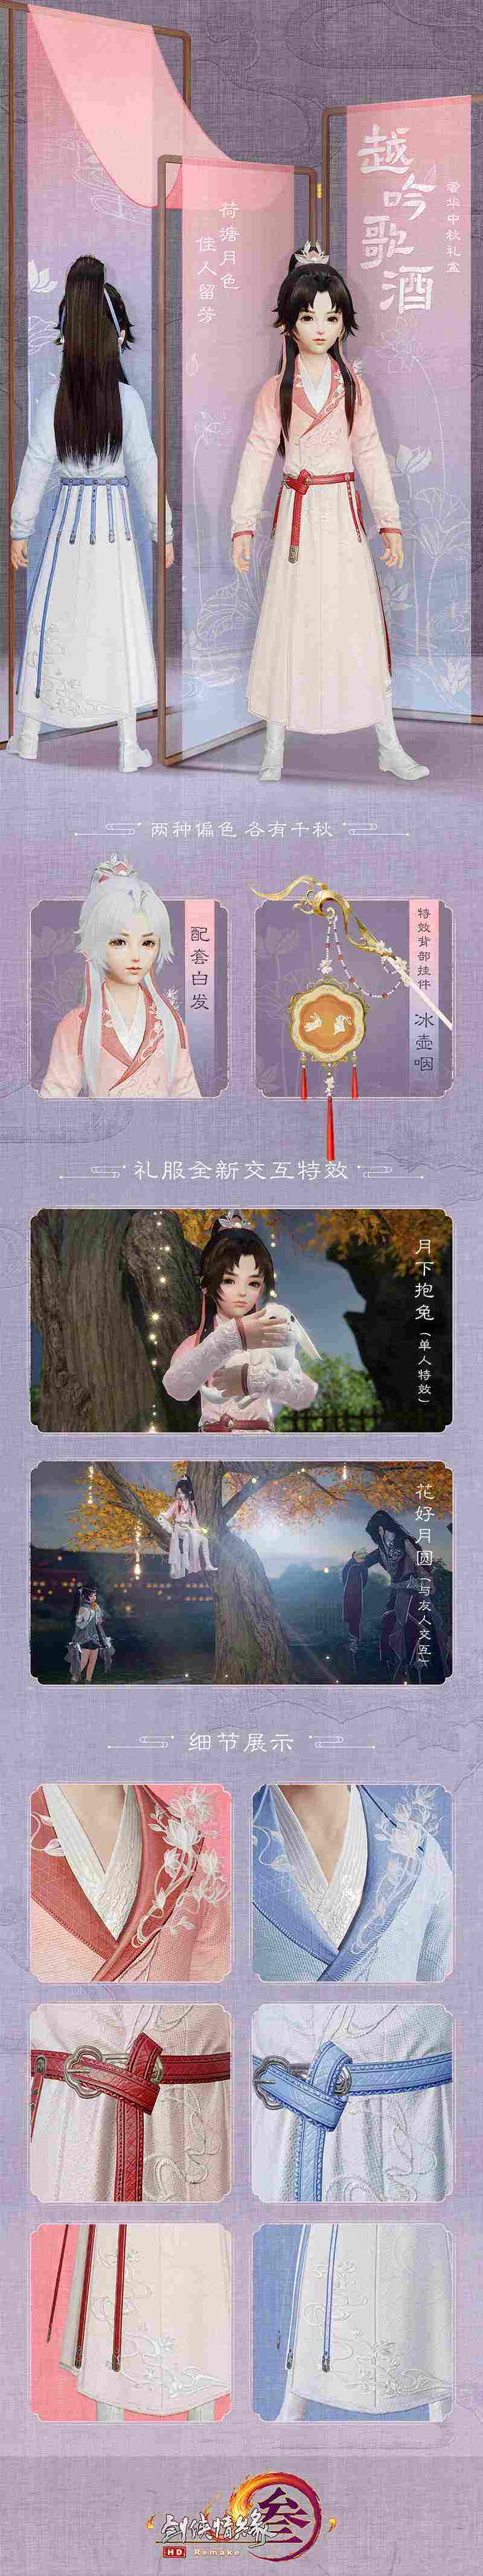 《剑网3》奢华中秋礼盒来袭 七秀剧情大片首映